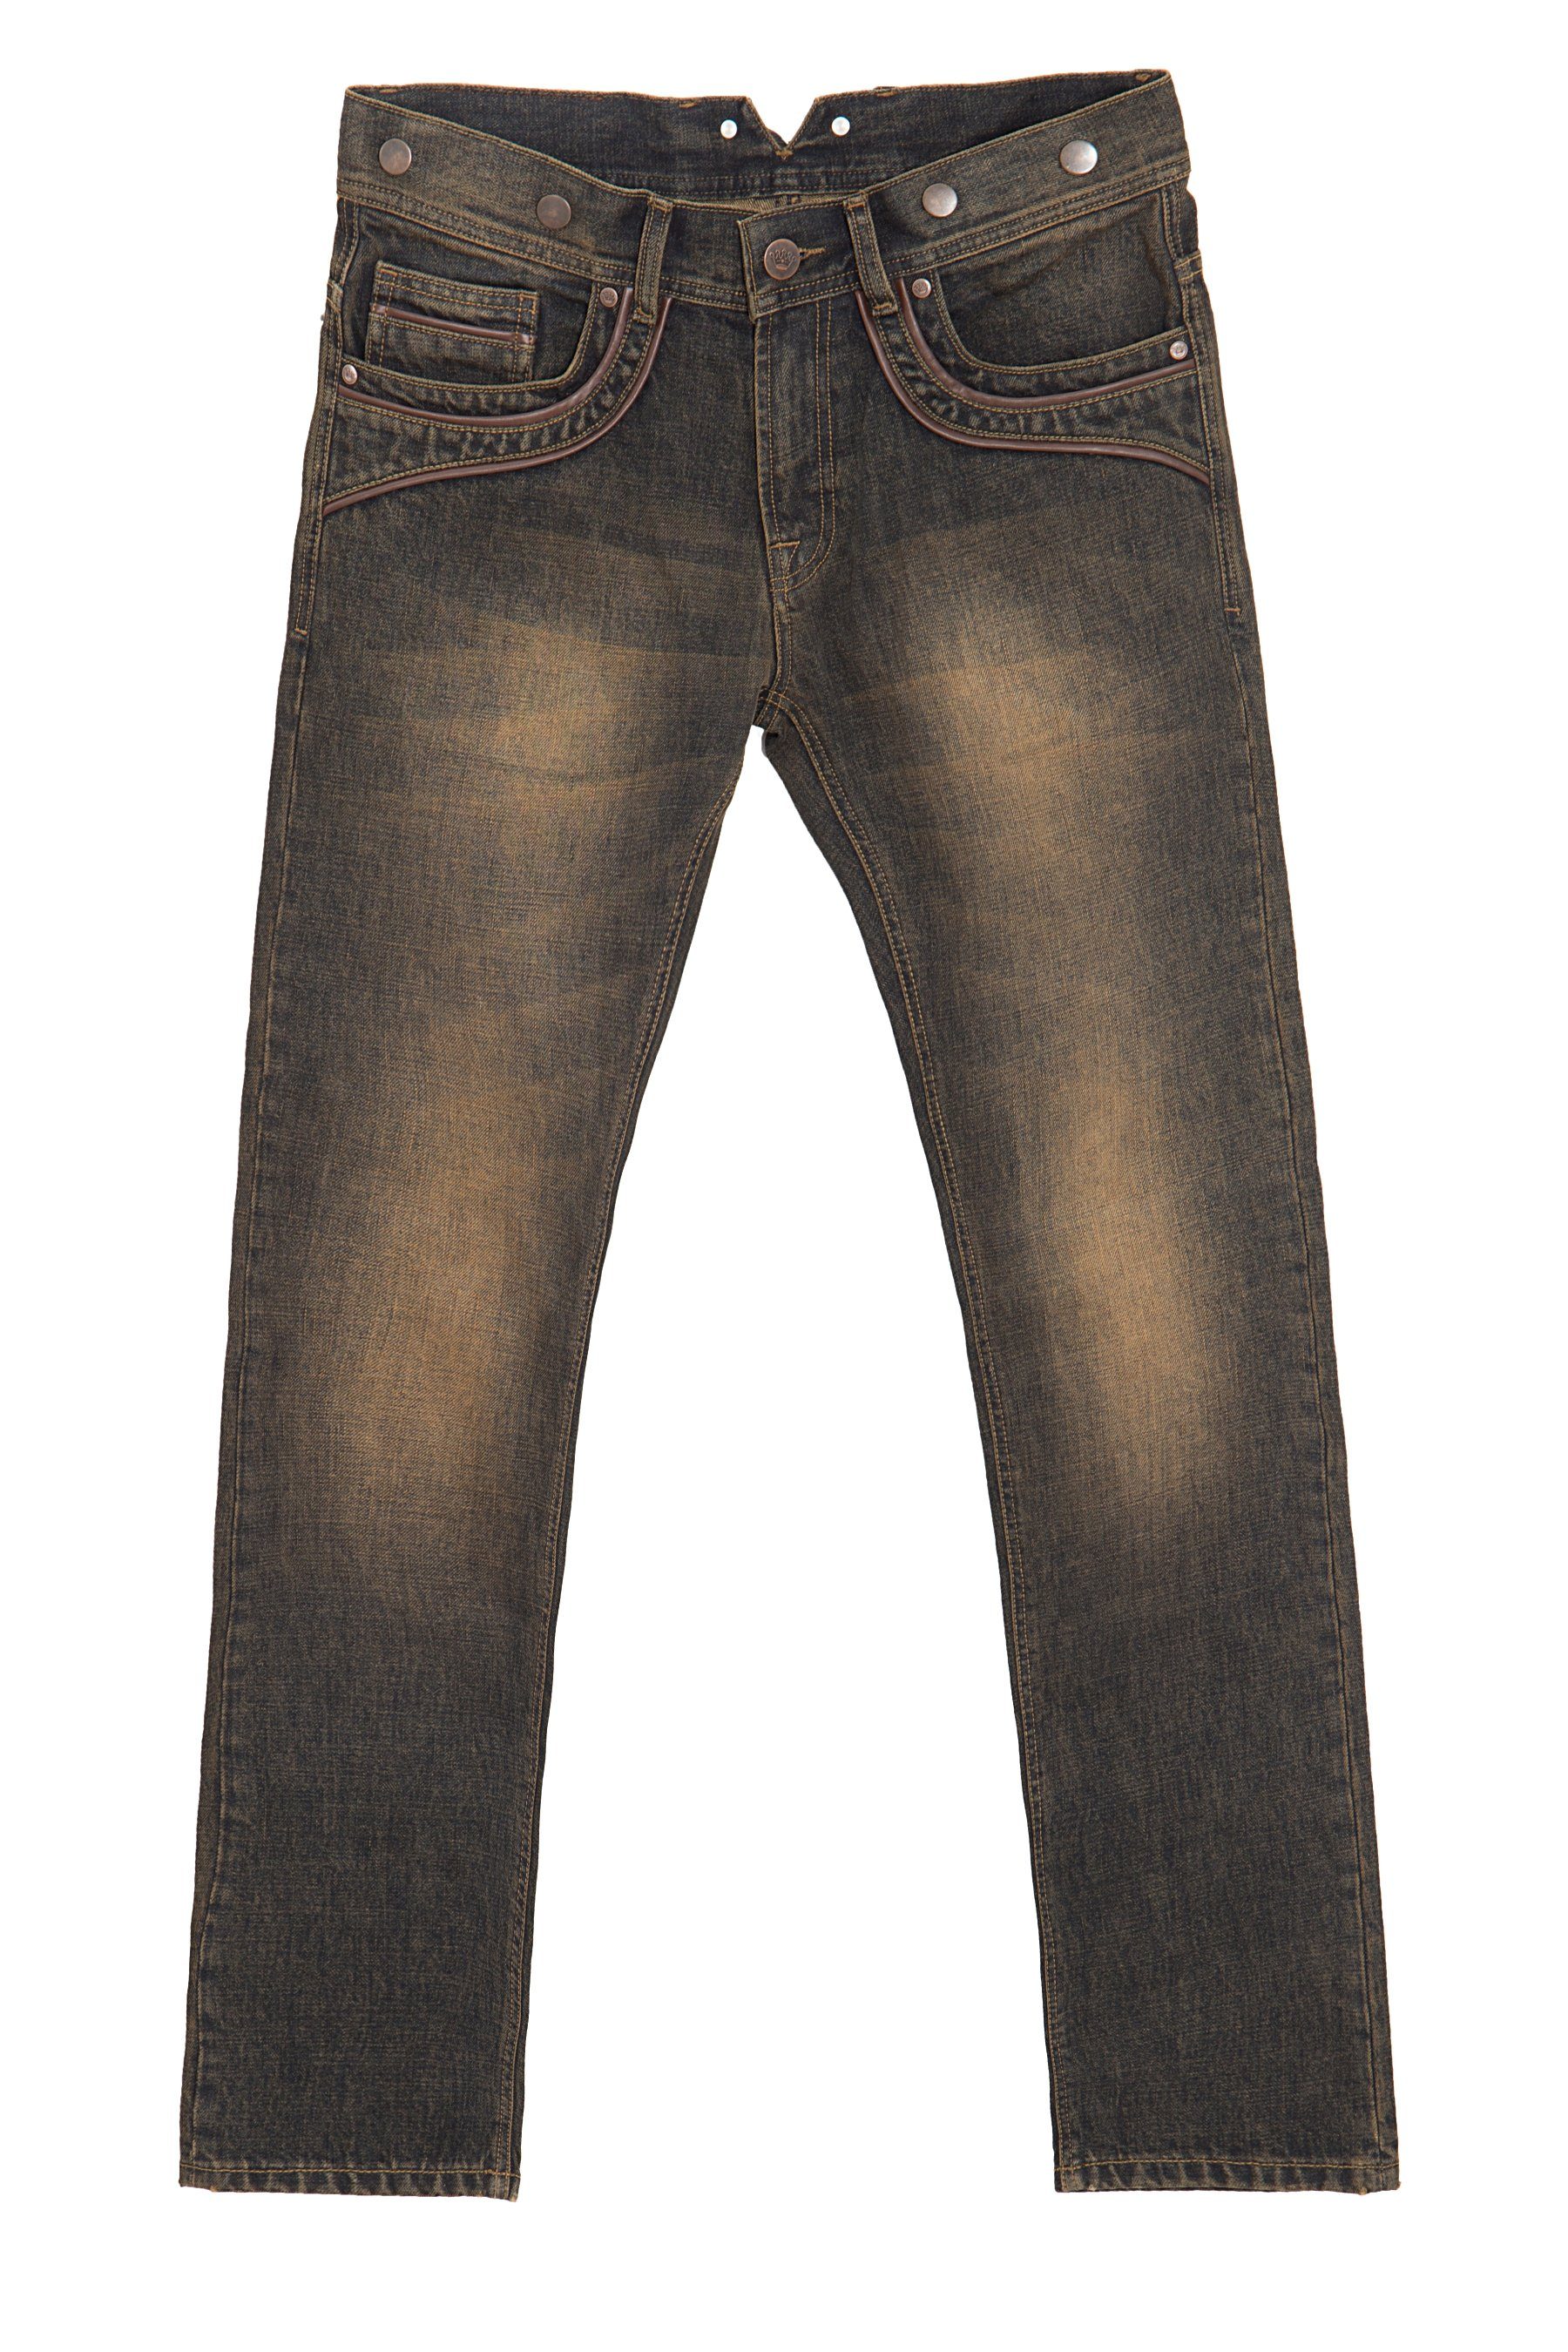 KingKerosin Slim-fit-Jeans »Robin« mit Lederpaspelierungen und Knöpfen für  Hosenträger online kaufen | OTTO